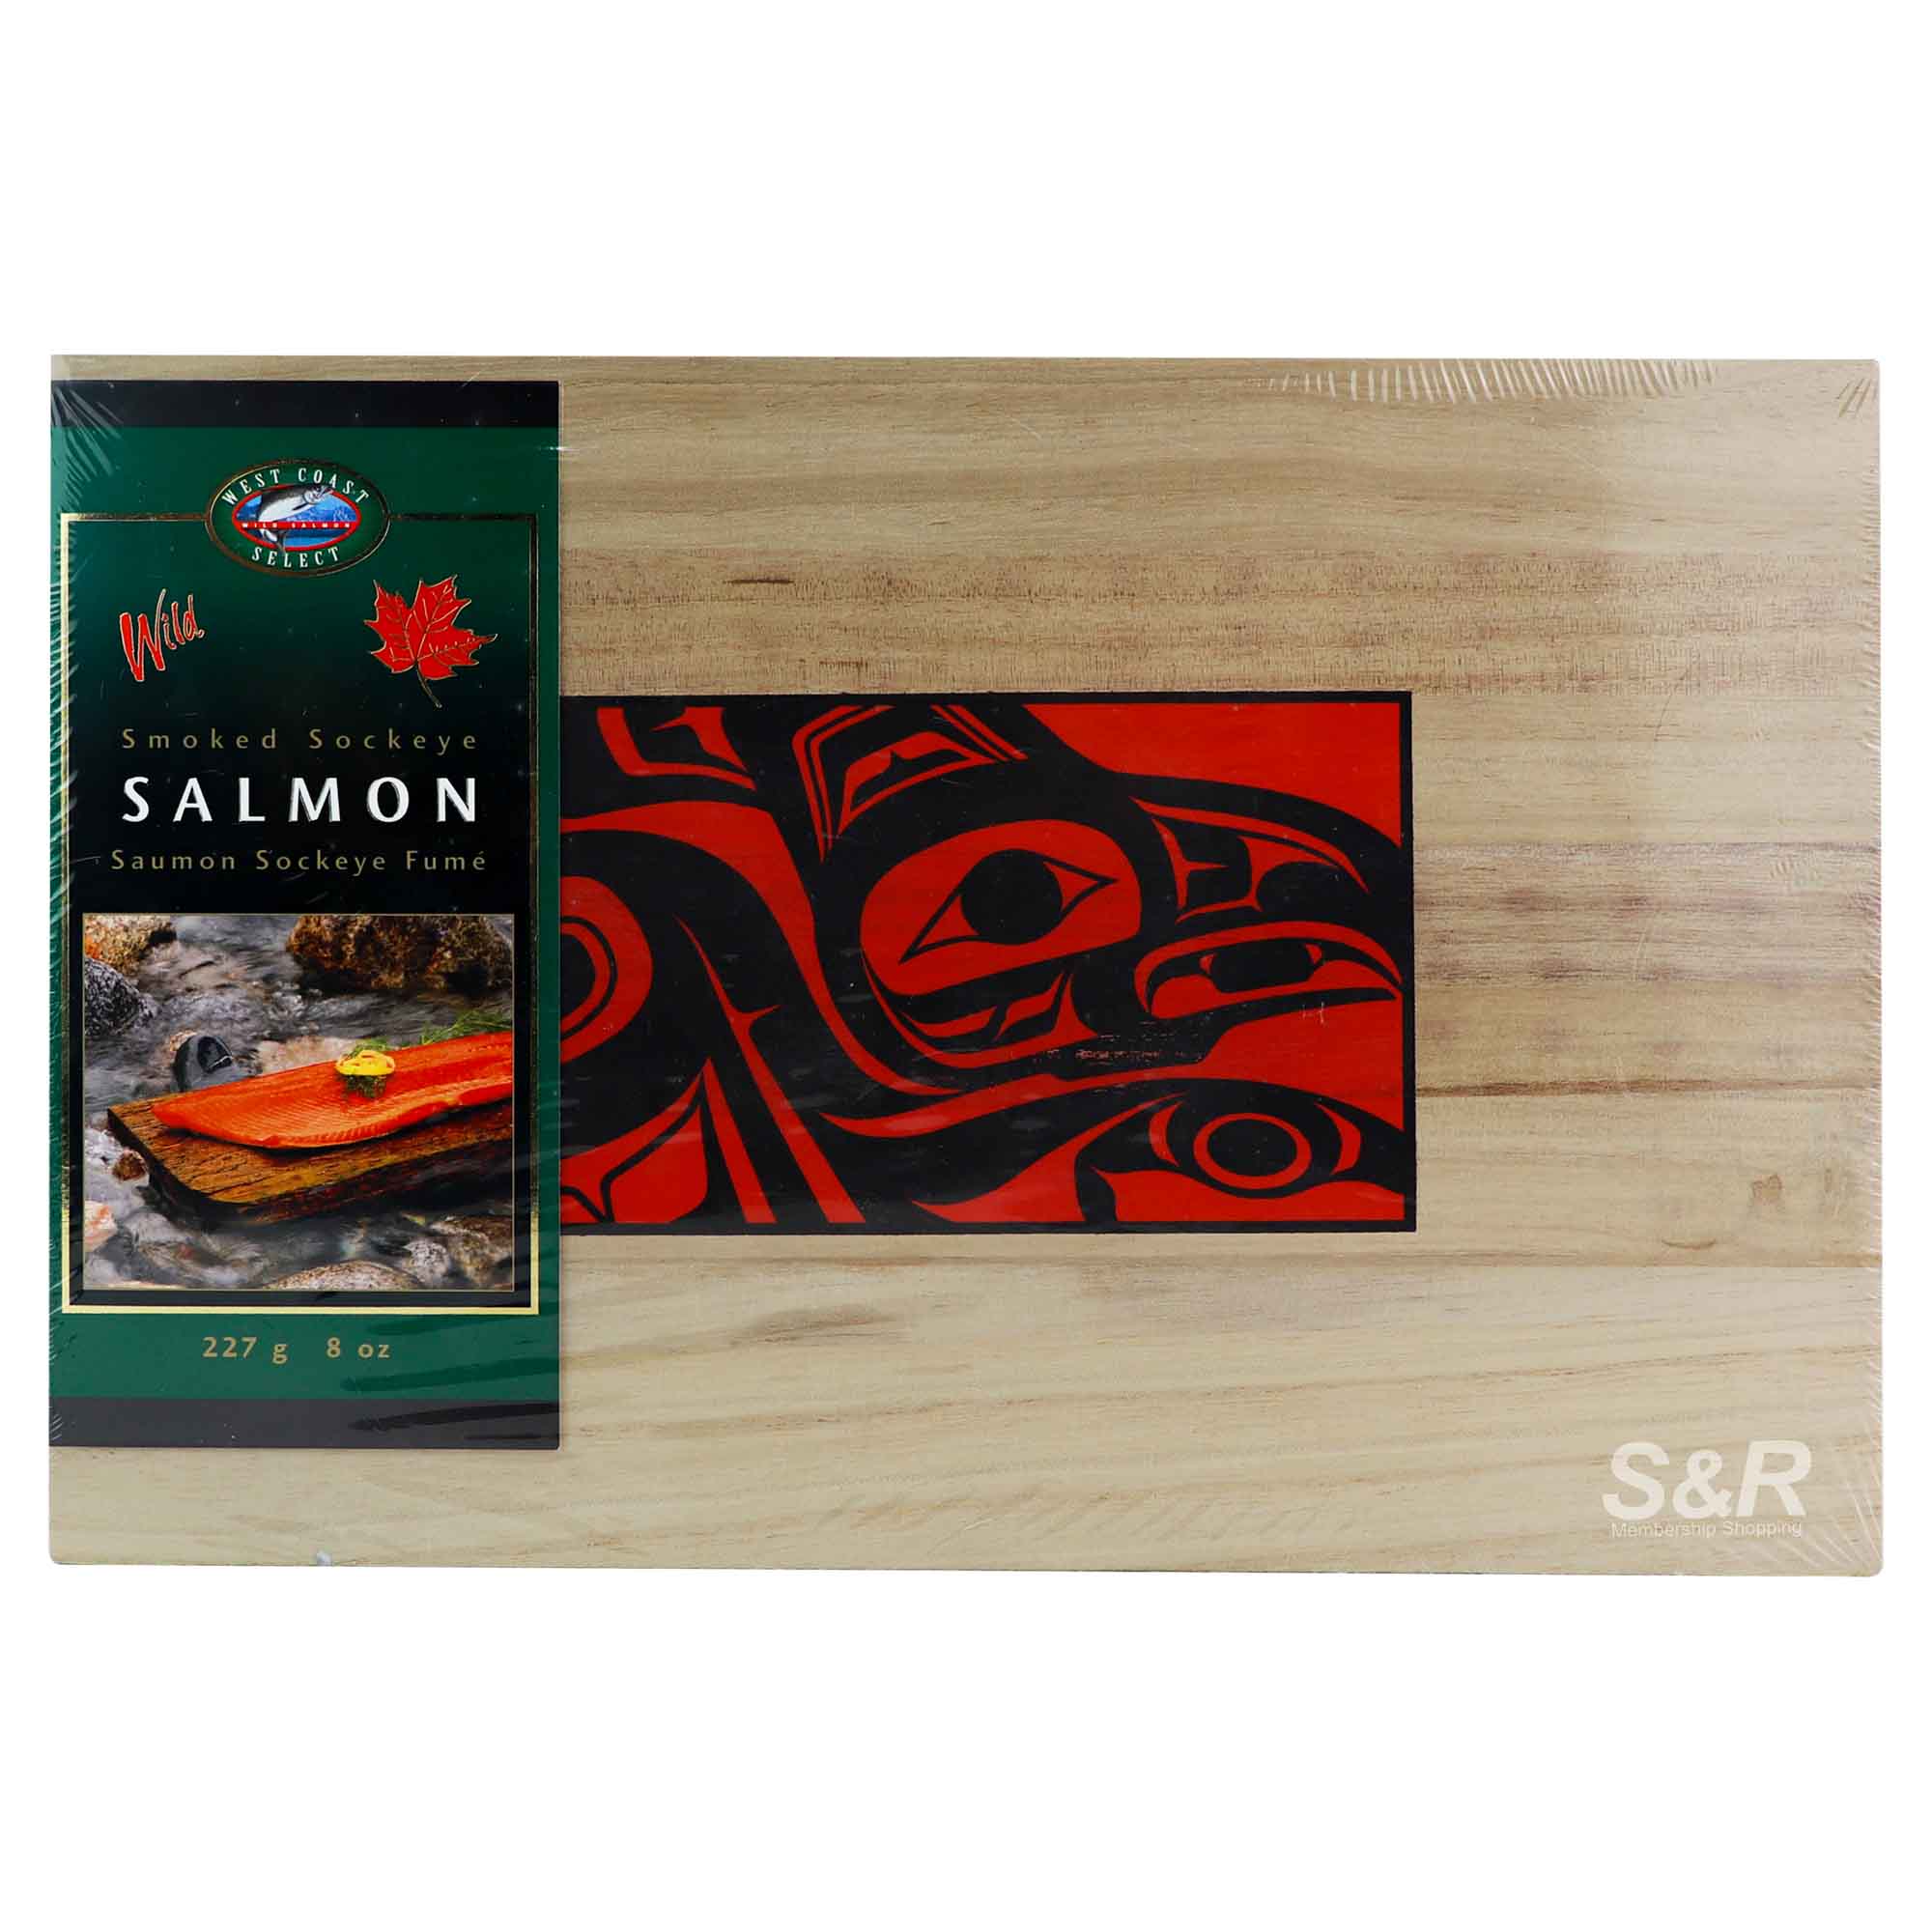 West Coast Select Sockeye Salmon Saumon Sockeye Fume 227g